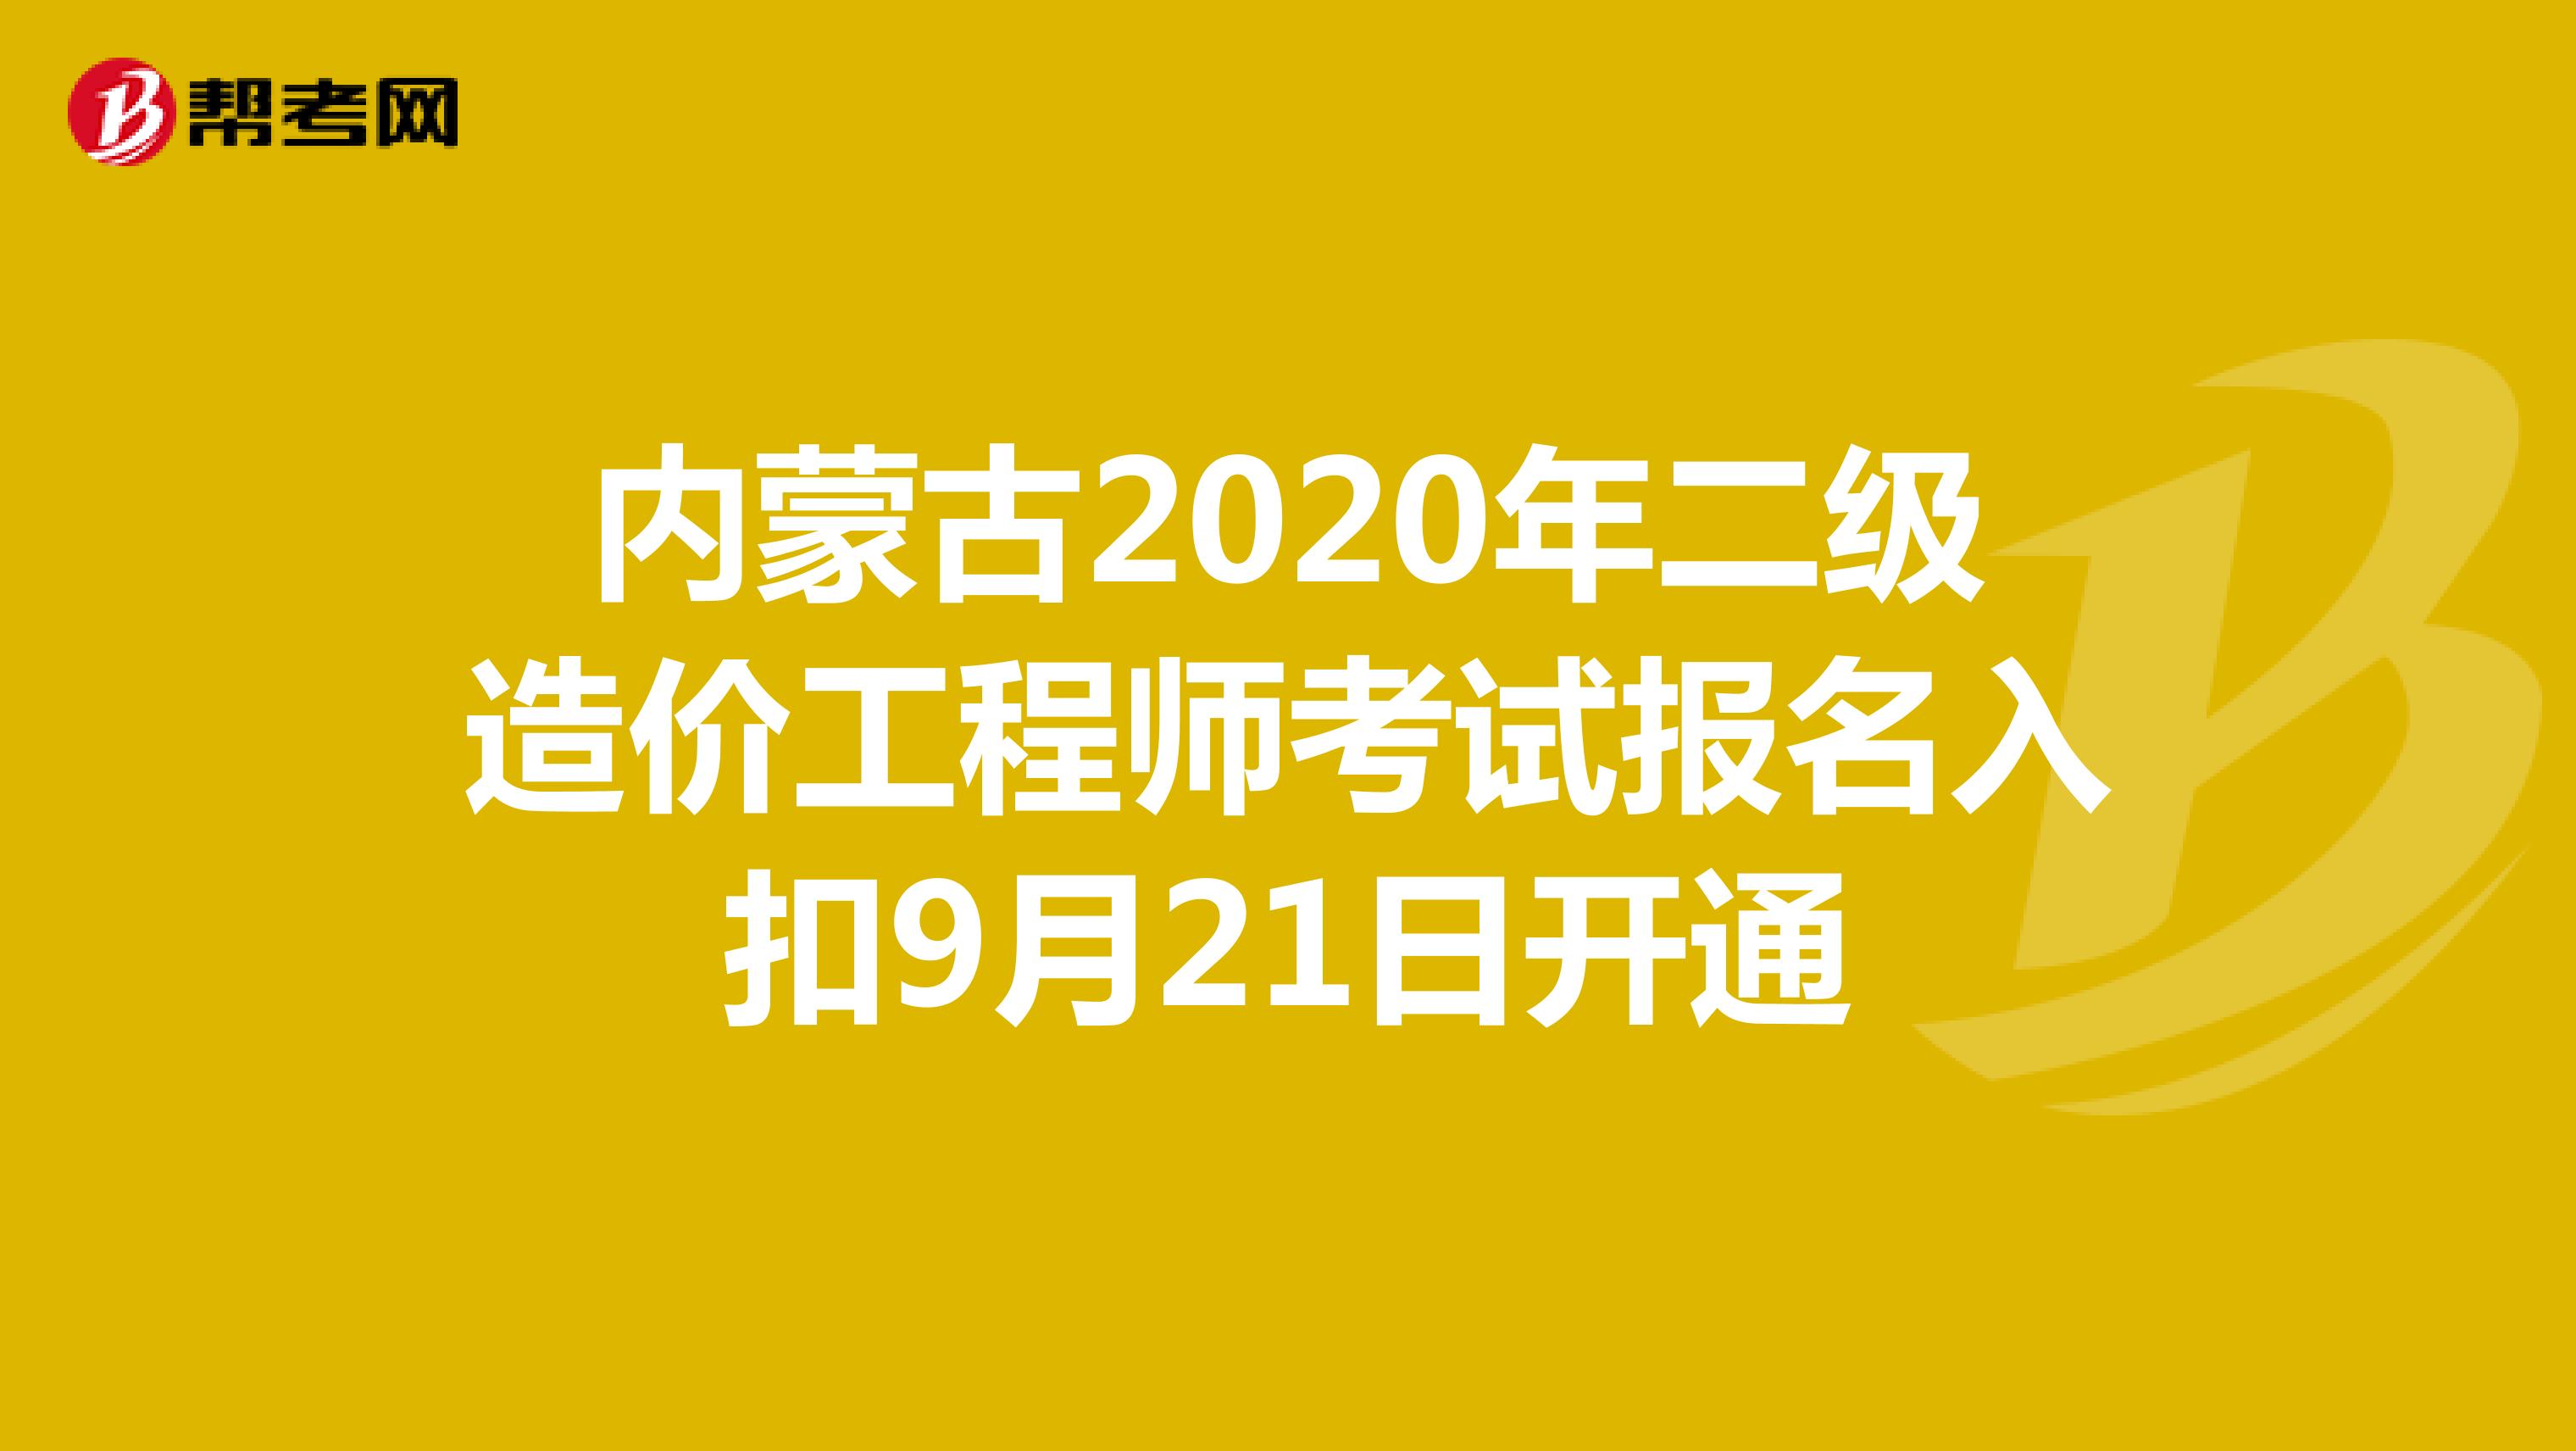 内蒙古2020年二级造价工程师考试报名入口9月21日开通